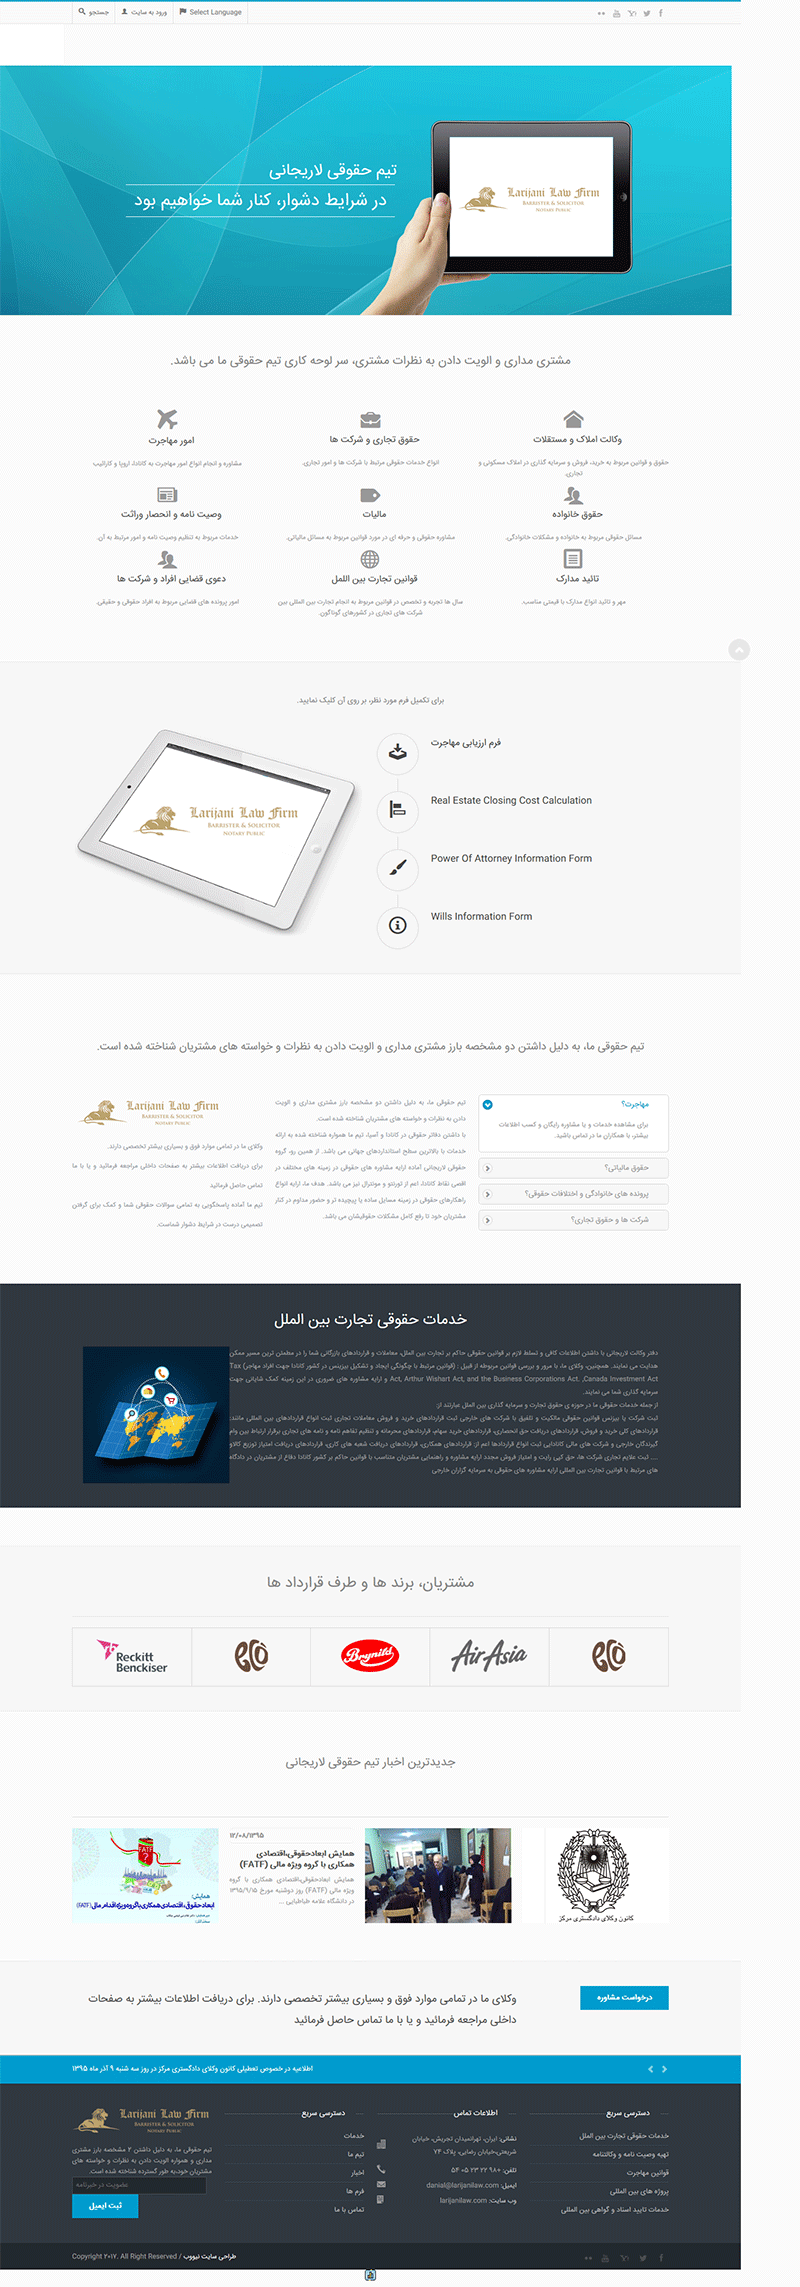  طراحی سایت دفتر وکالت لاریجانی